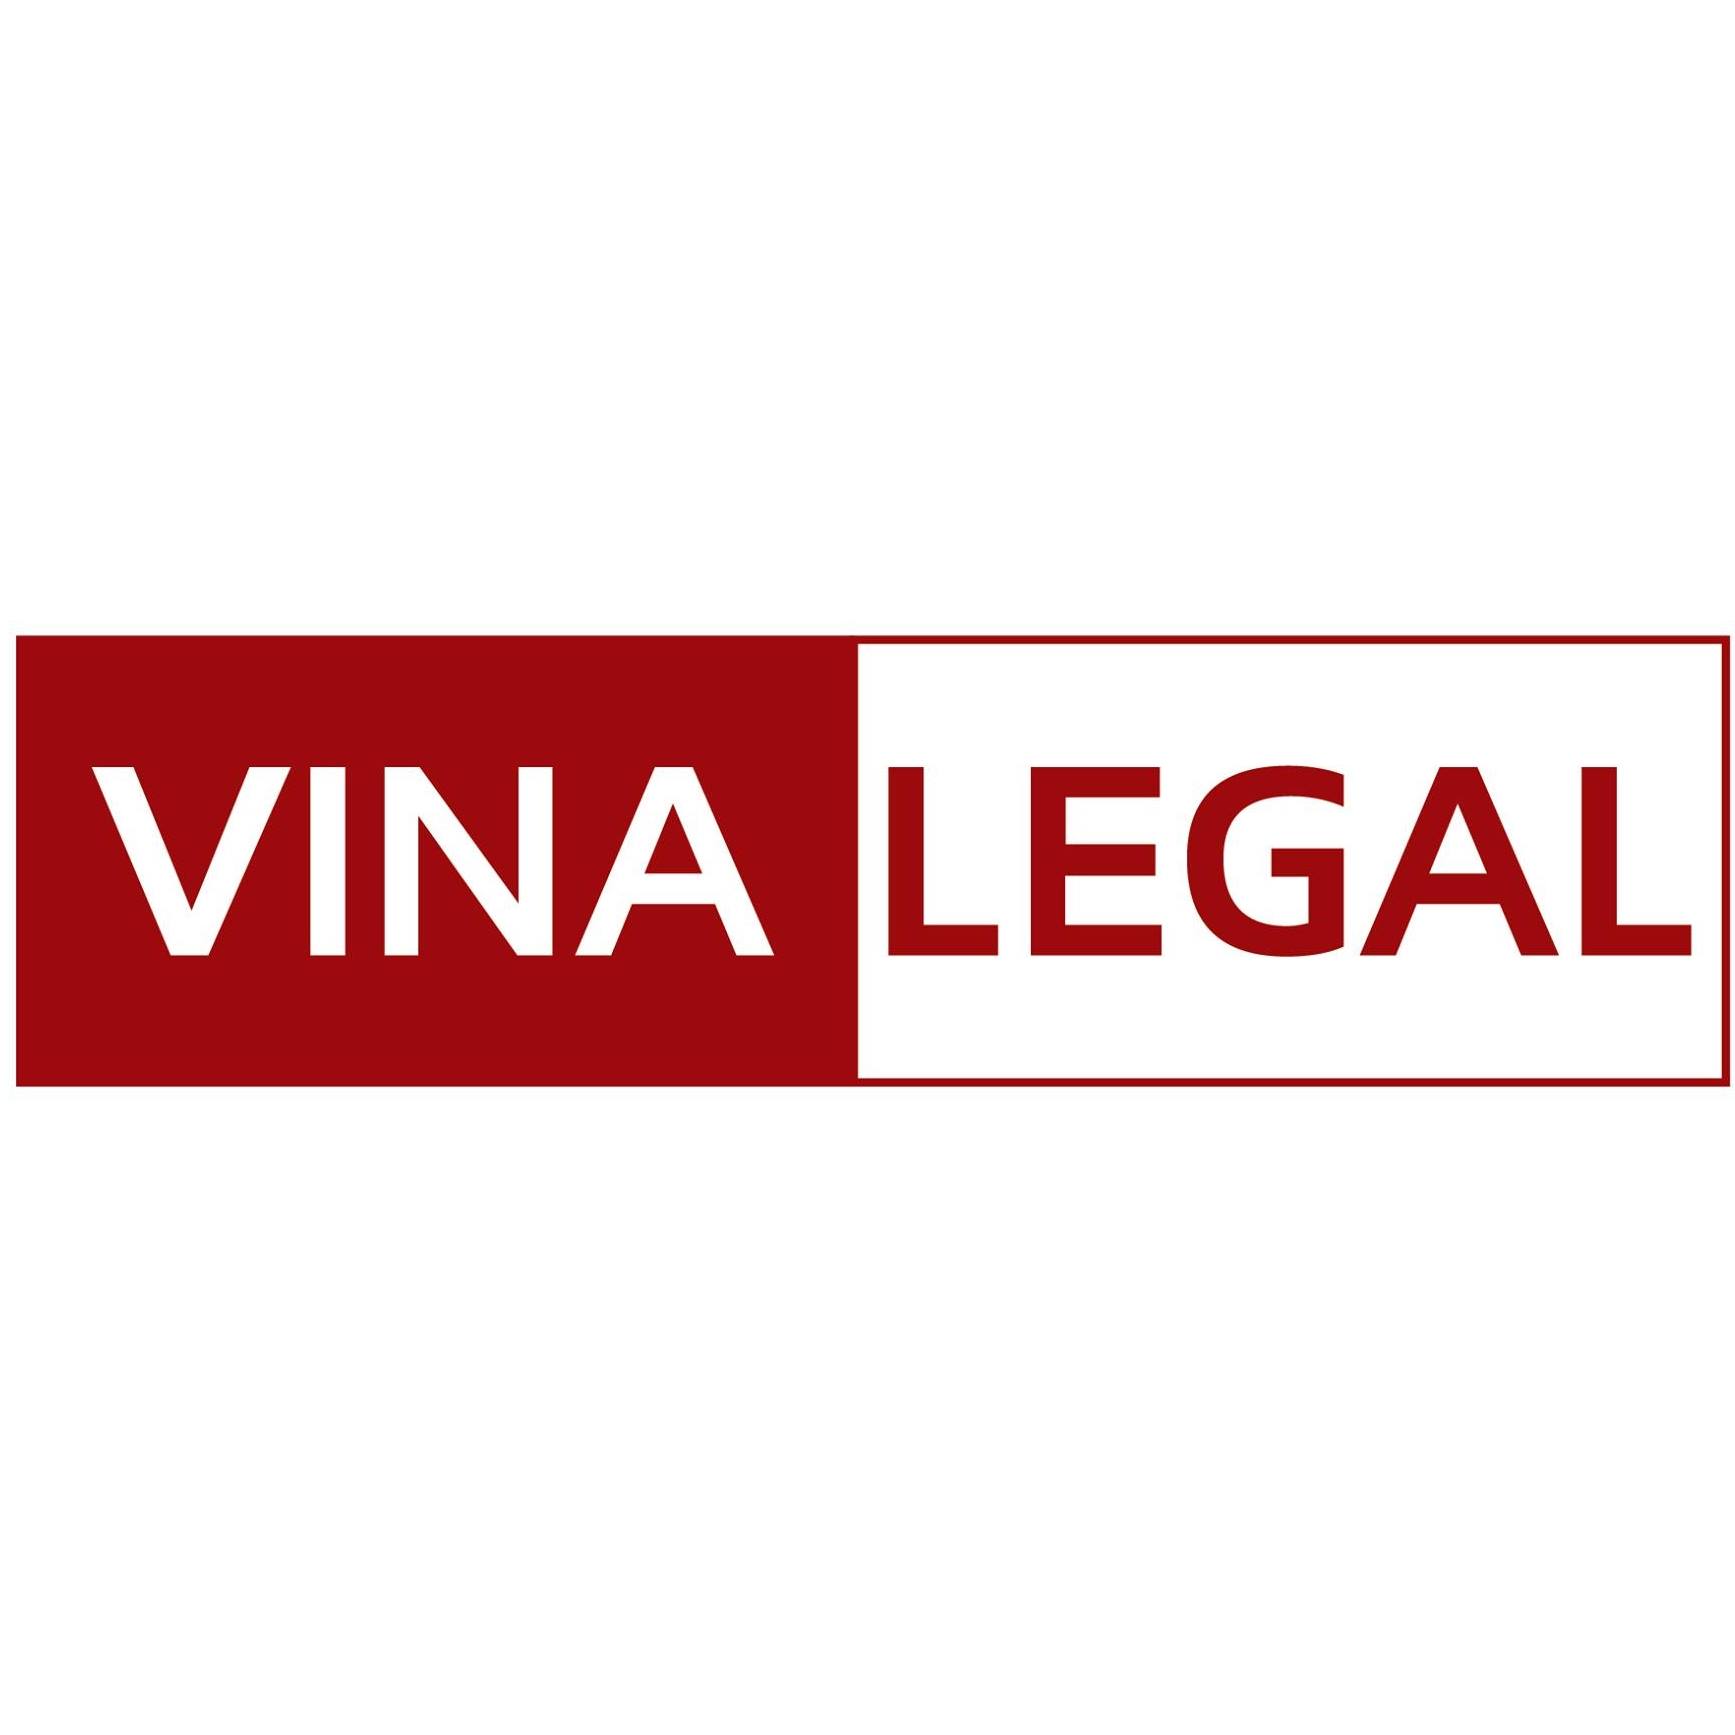 VINA LEGAL tuyển dụng 02 Cử nhân Luật tại Hà Nội